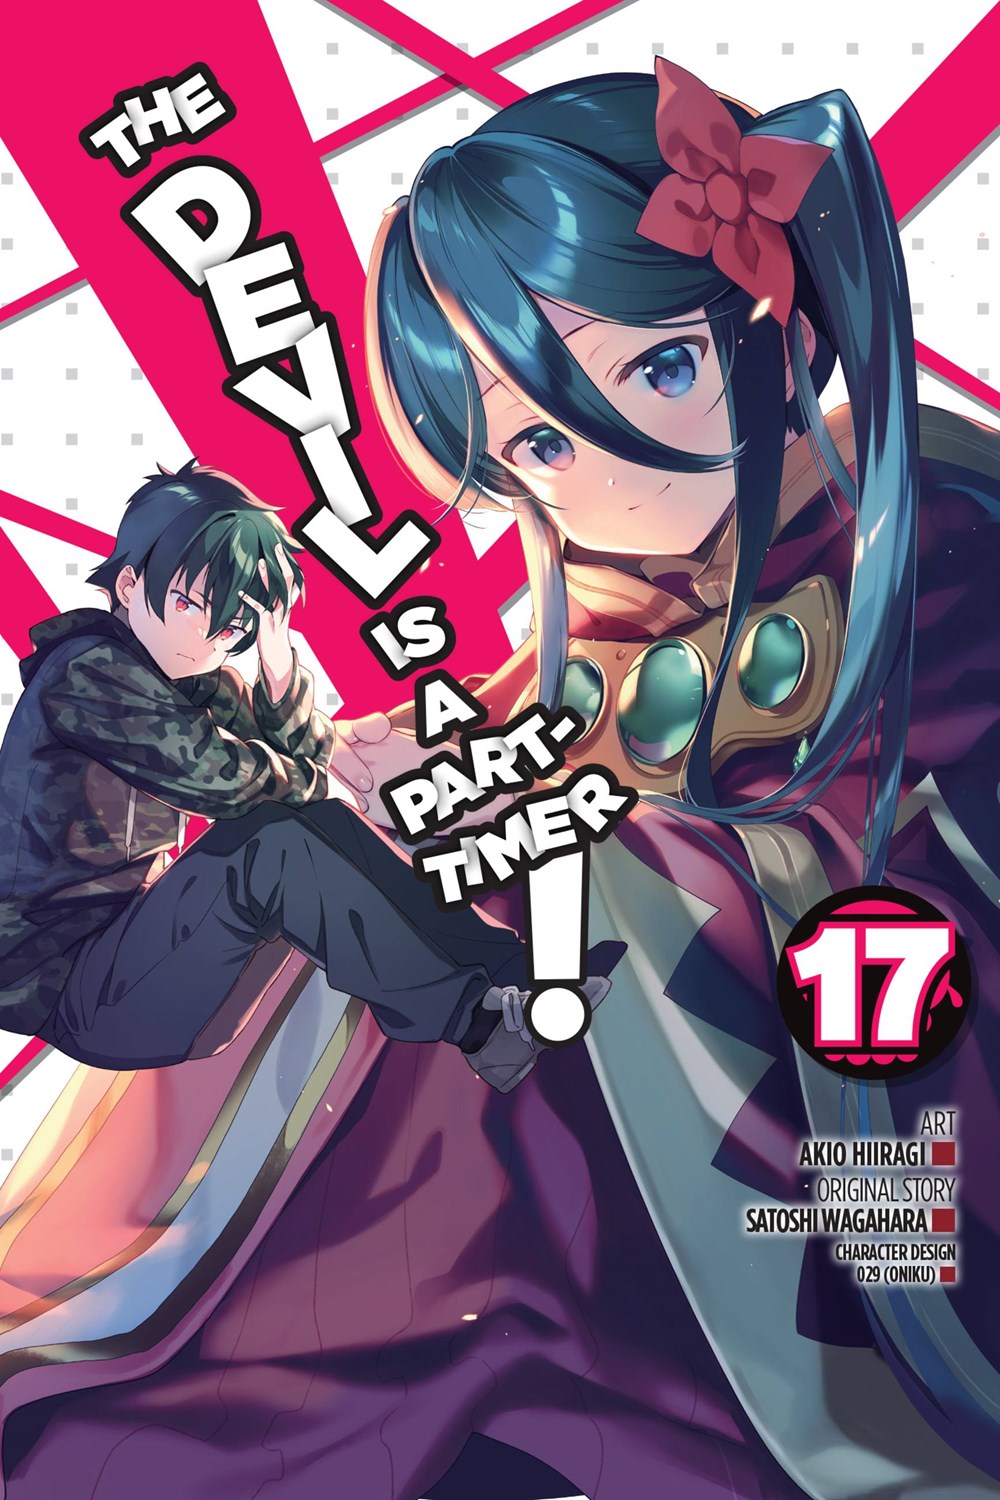 Harukana Receive Volume 8 Manga Review - TheOASG